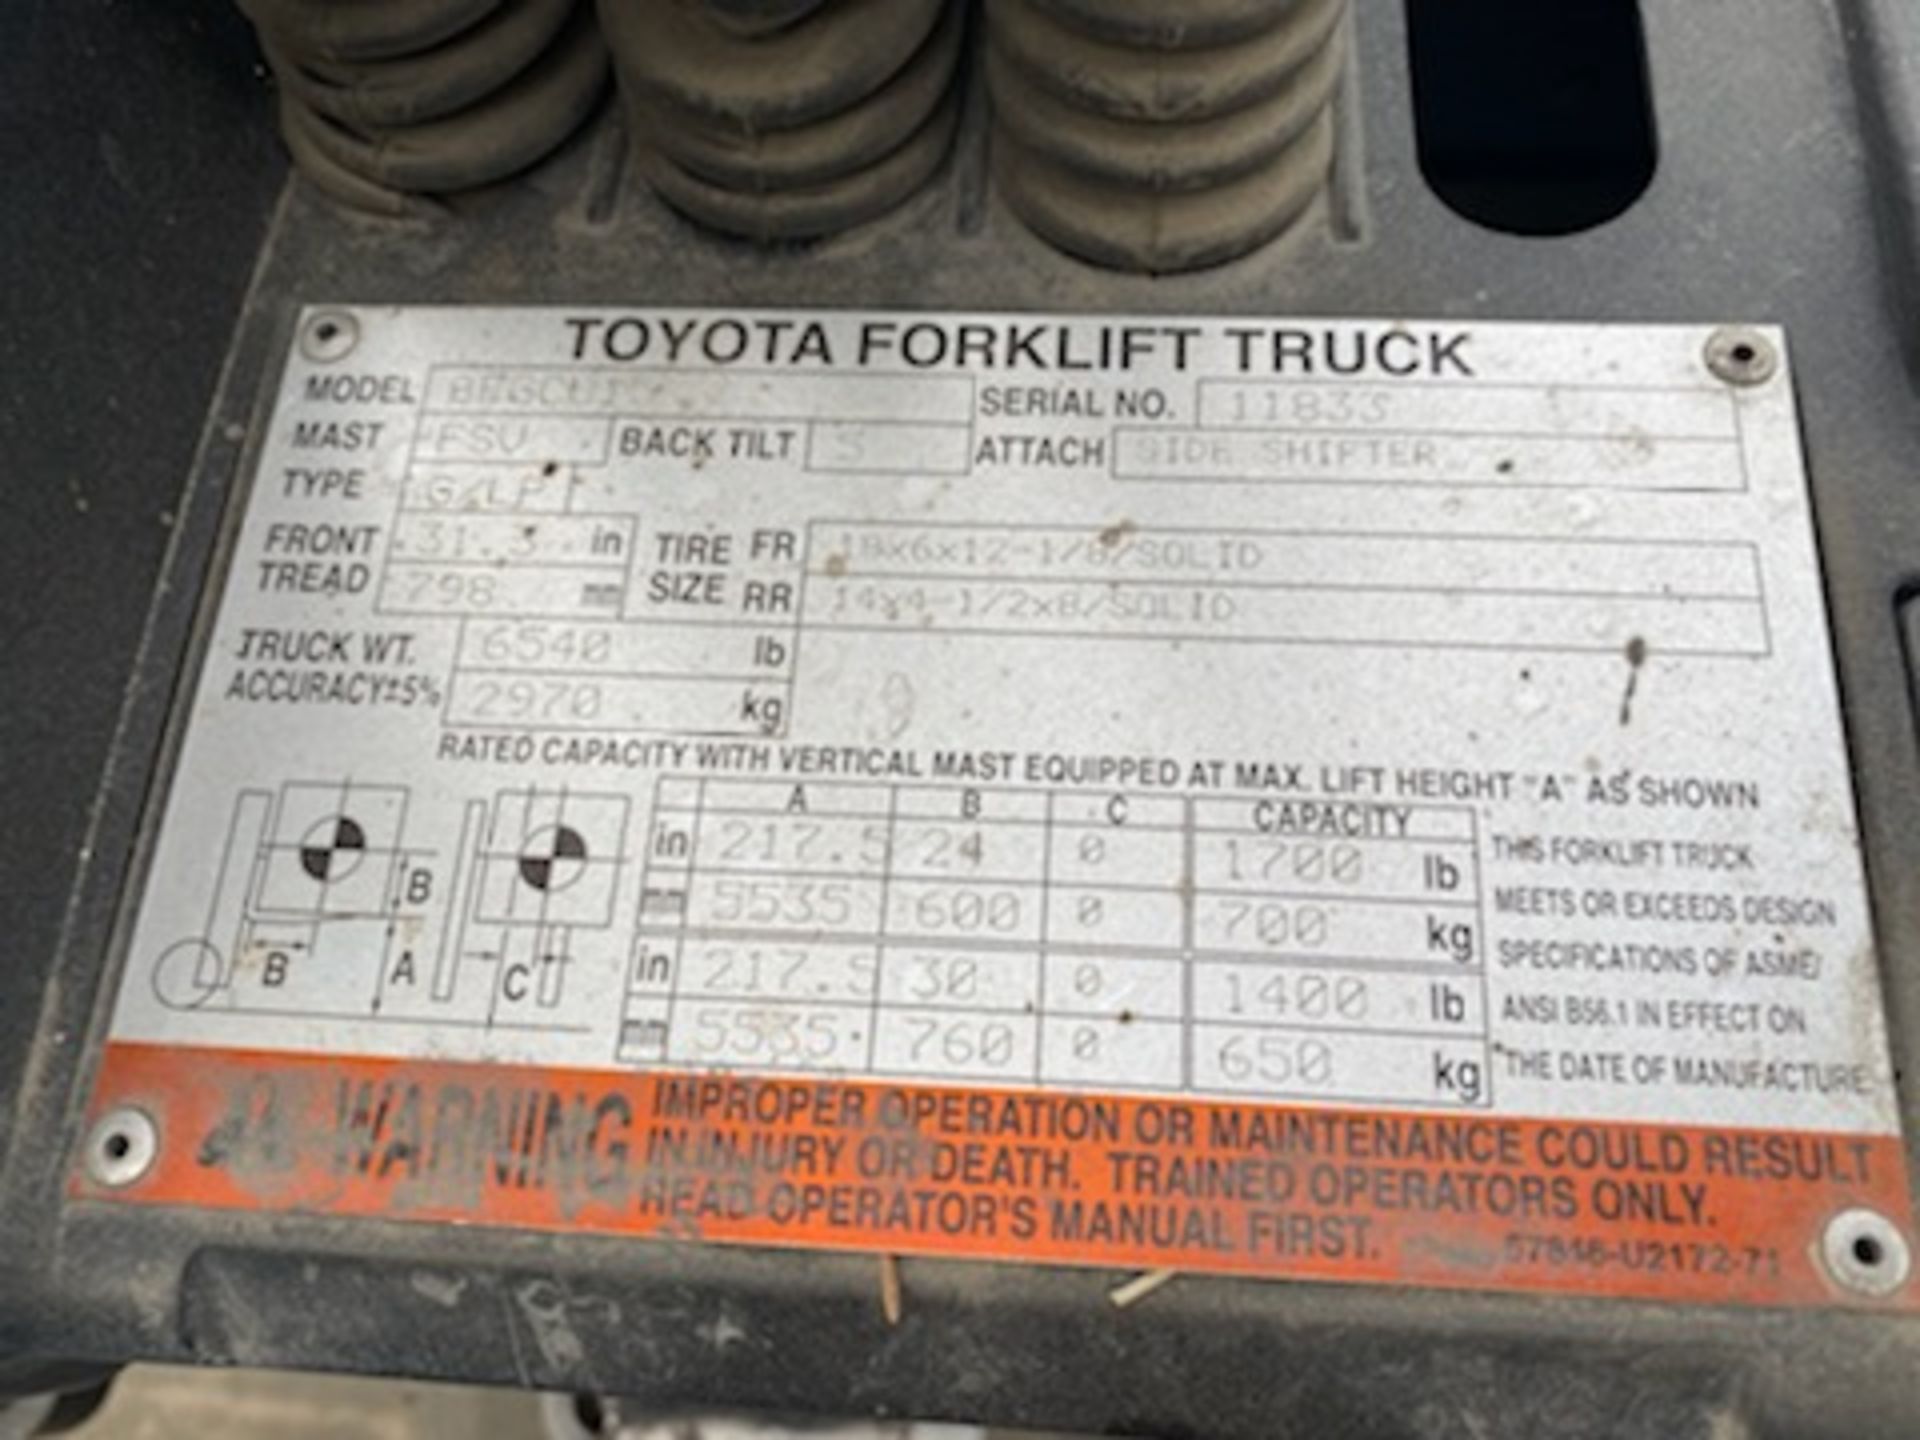 Toyota 4500 lb. LP Forklift #8FGCU15, SN:11833 (DELAYED REMOVAL 9/30/21). - Image 6 of 6